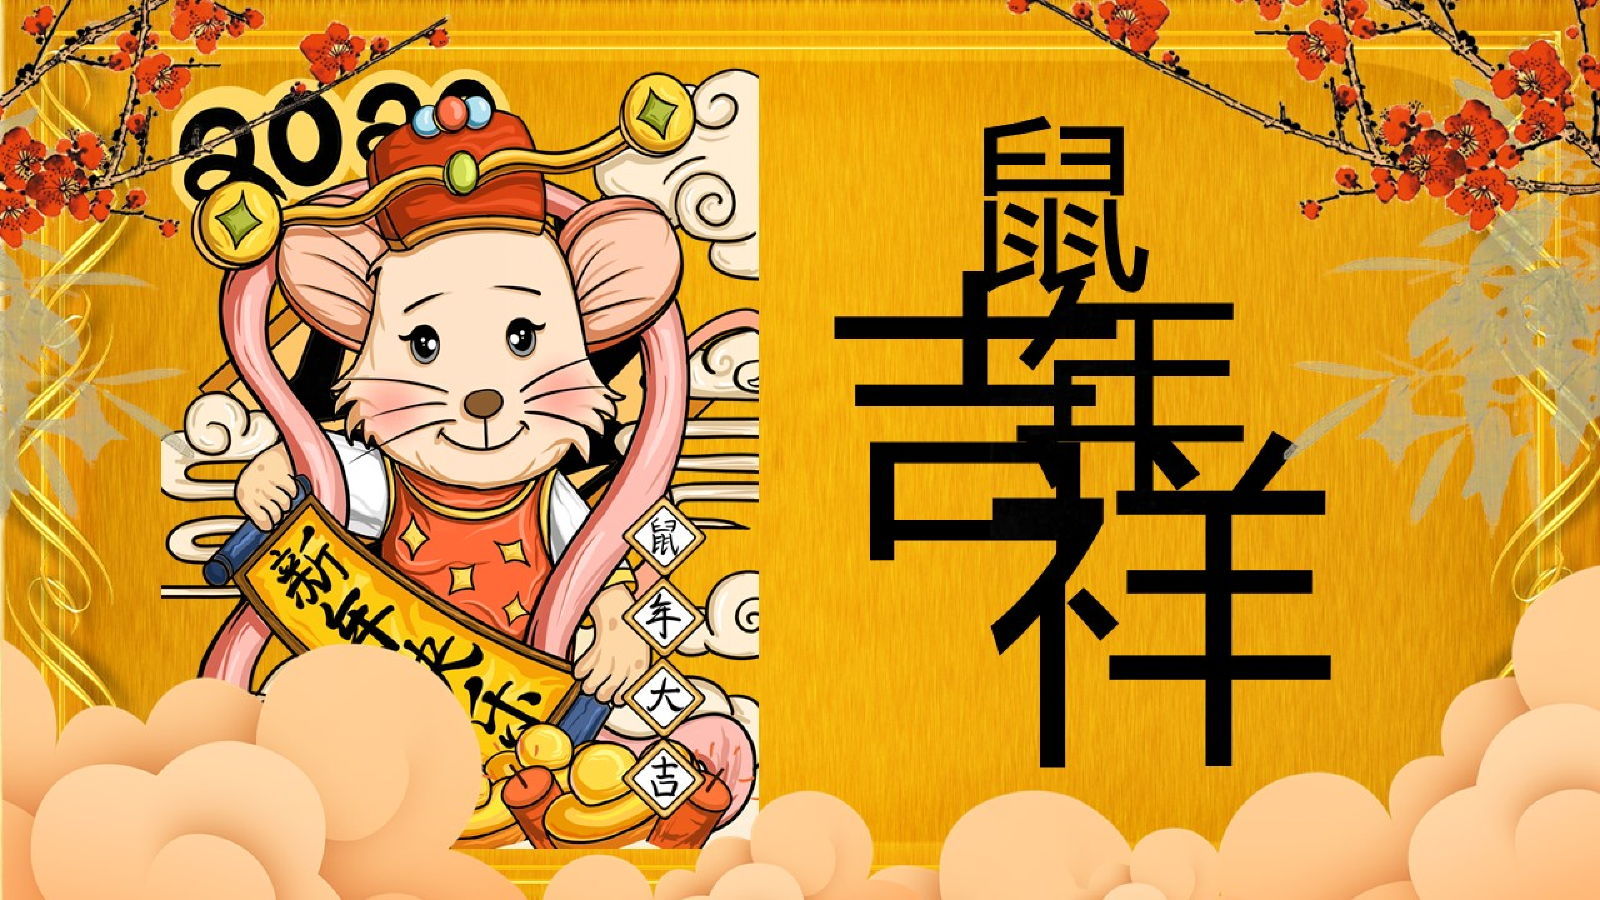 中国传统节日鼠年的由来介绍PPT模板